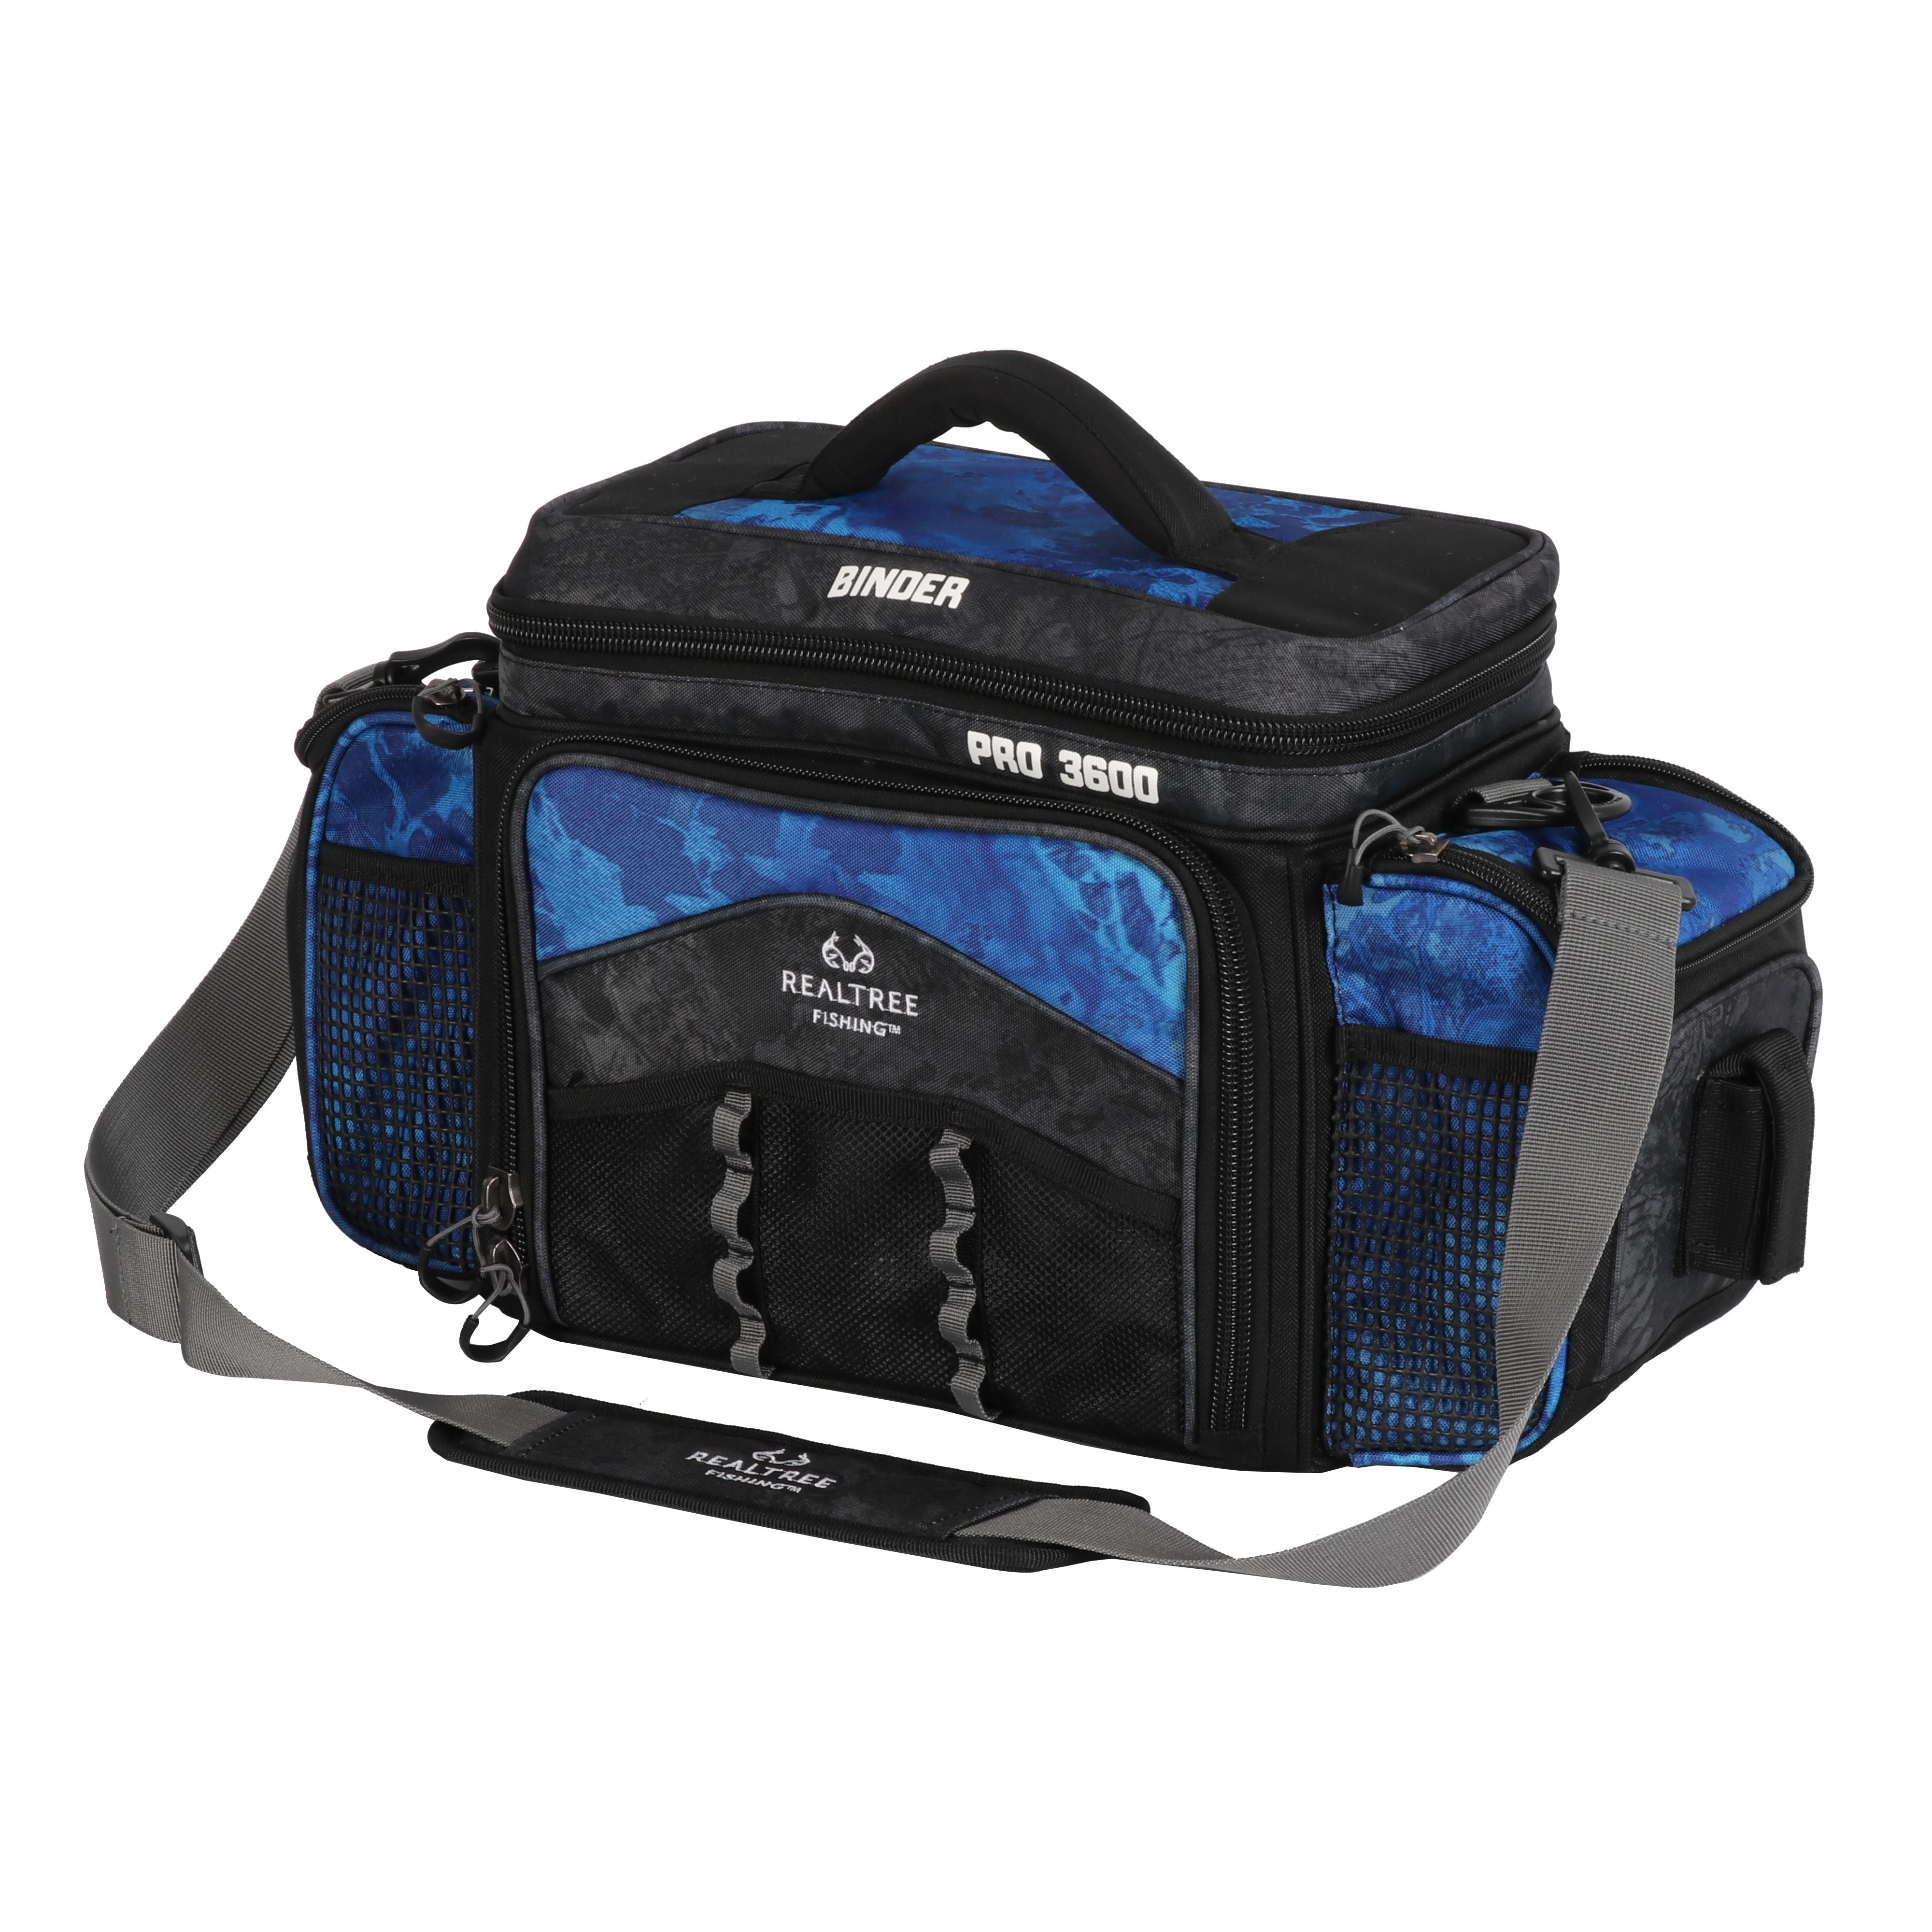 Uxwuy Tackle Box Waterproof 3600 Tackle Box Backpack Waterproof